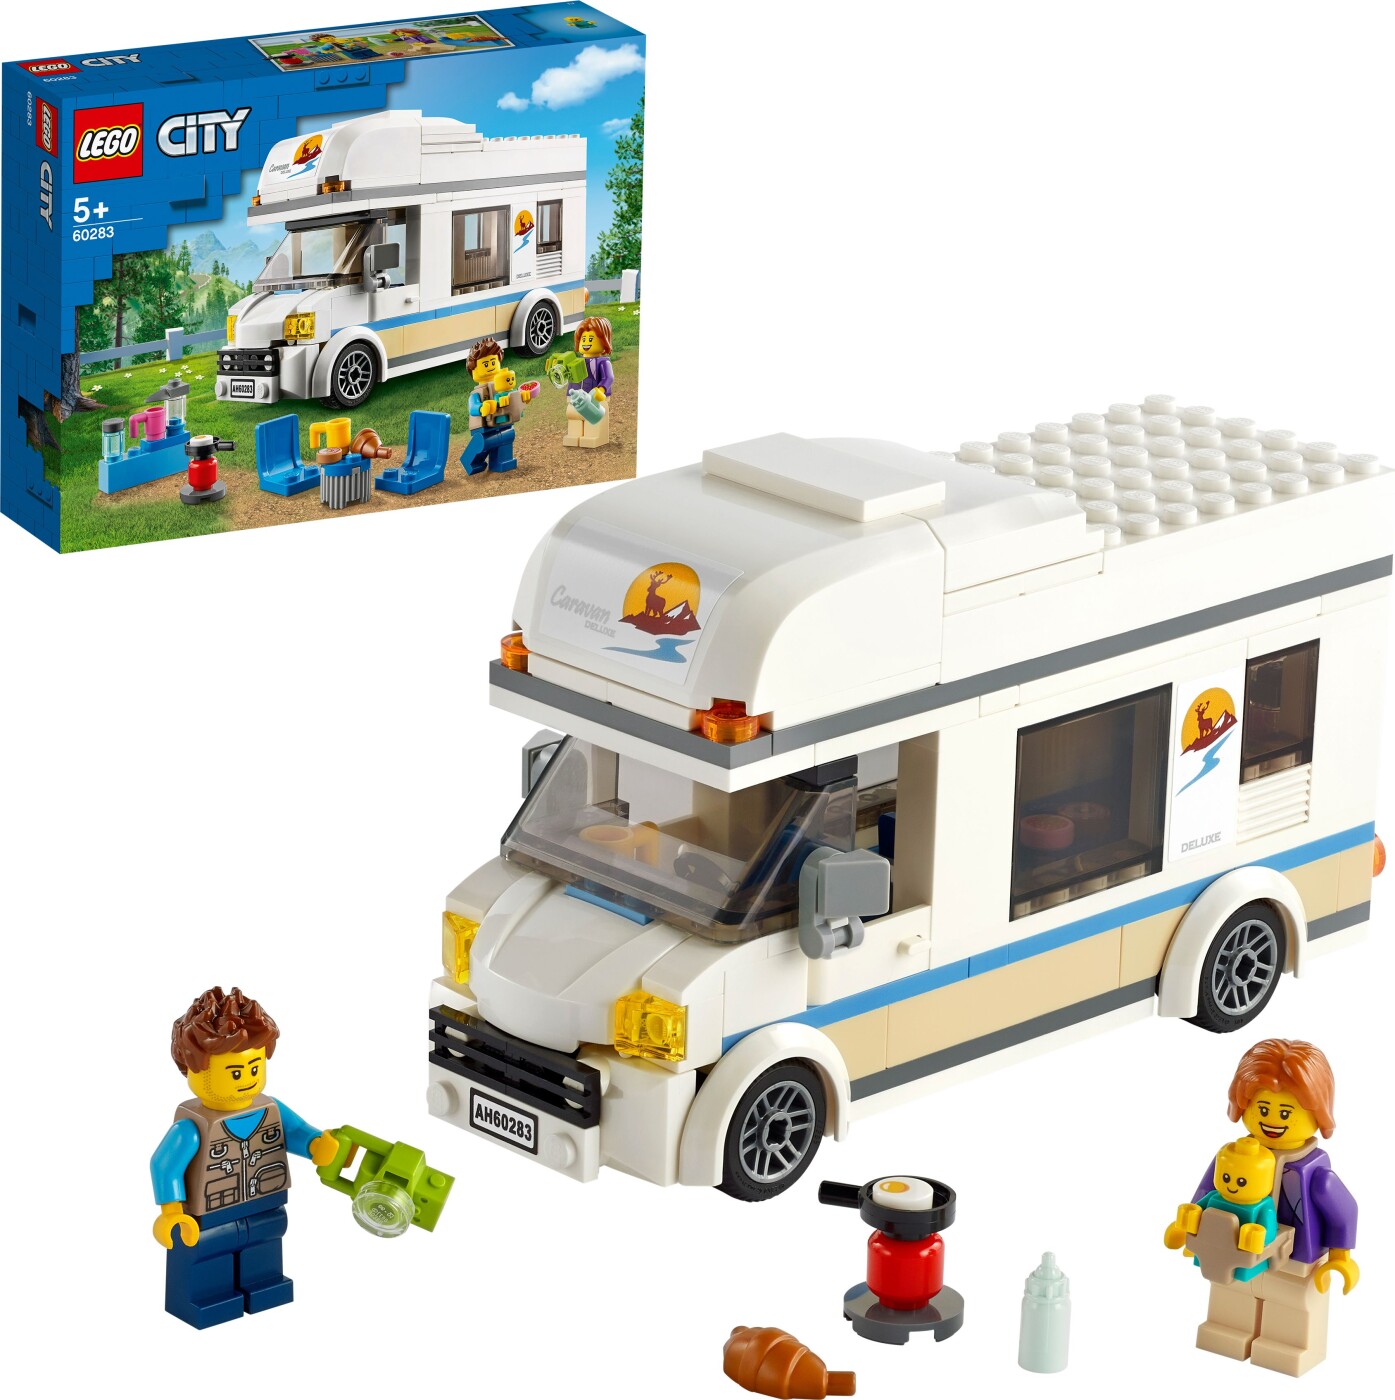 Billede af Lego City - Ferie-autocamper - 60283 hos Gucca.dk